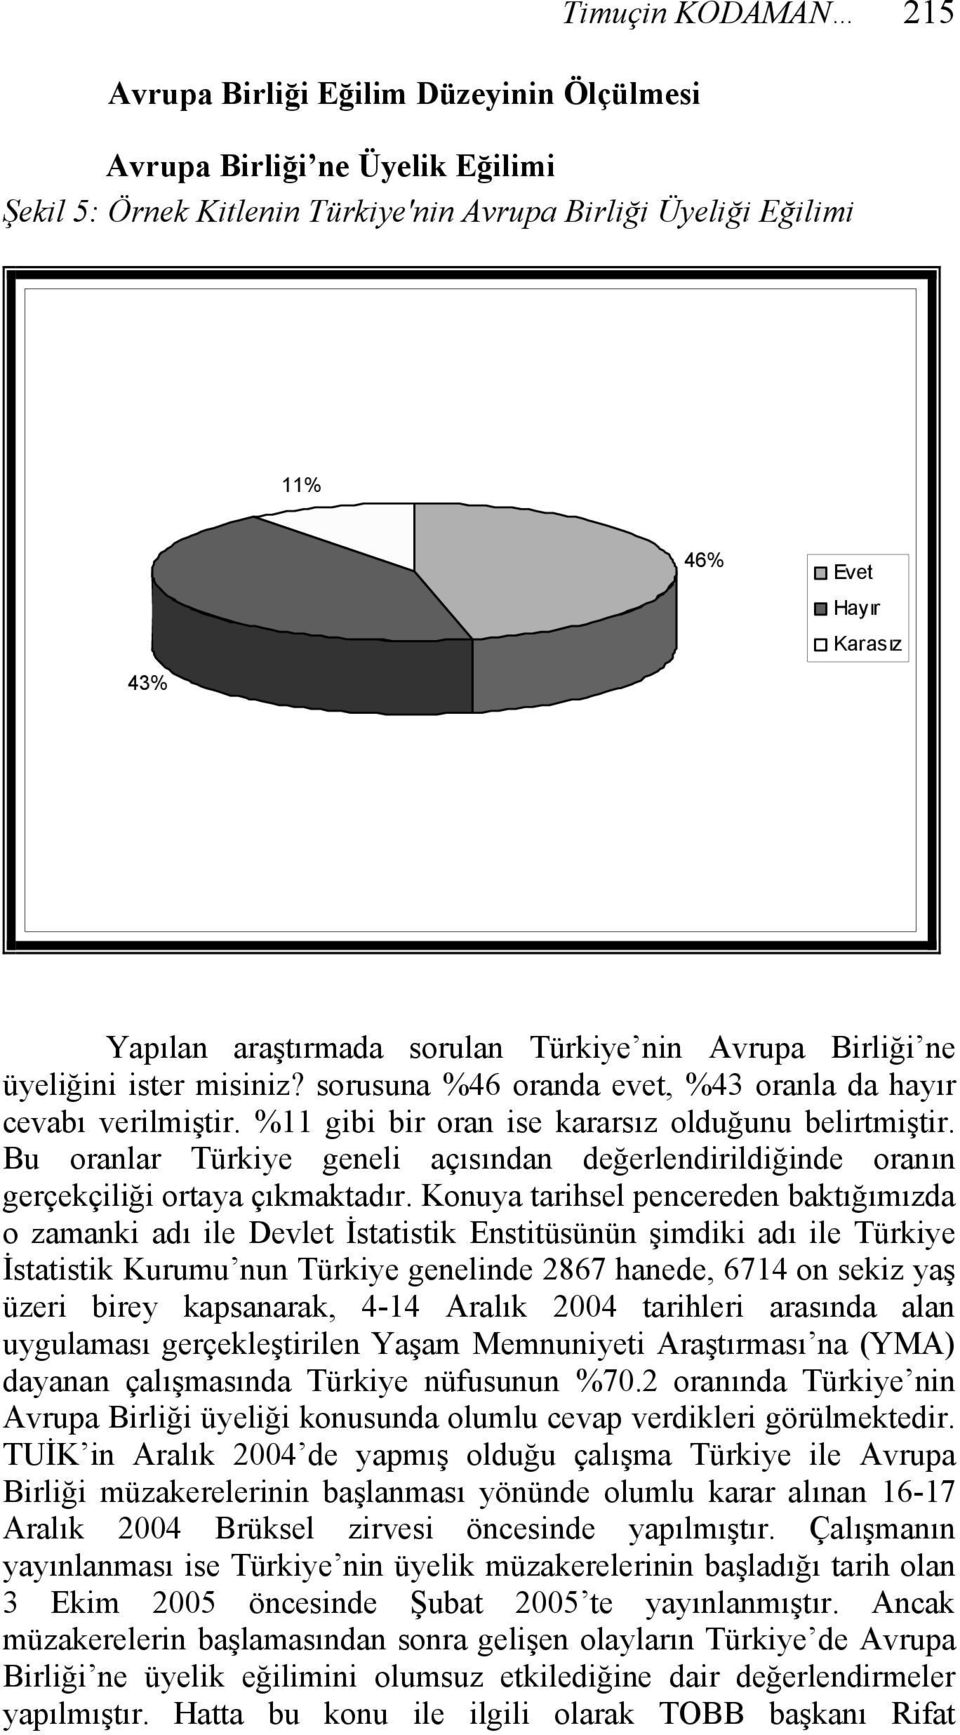 %11 gibi bir oran ise kararsız olduğunu belirtmiştir. Bu oranlar Türkiye geneli açısından değerlendirildiğinde oranın gerçekçiliği ortaya çıkmaktadır.